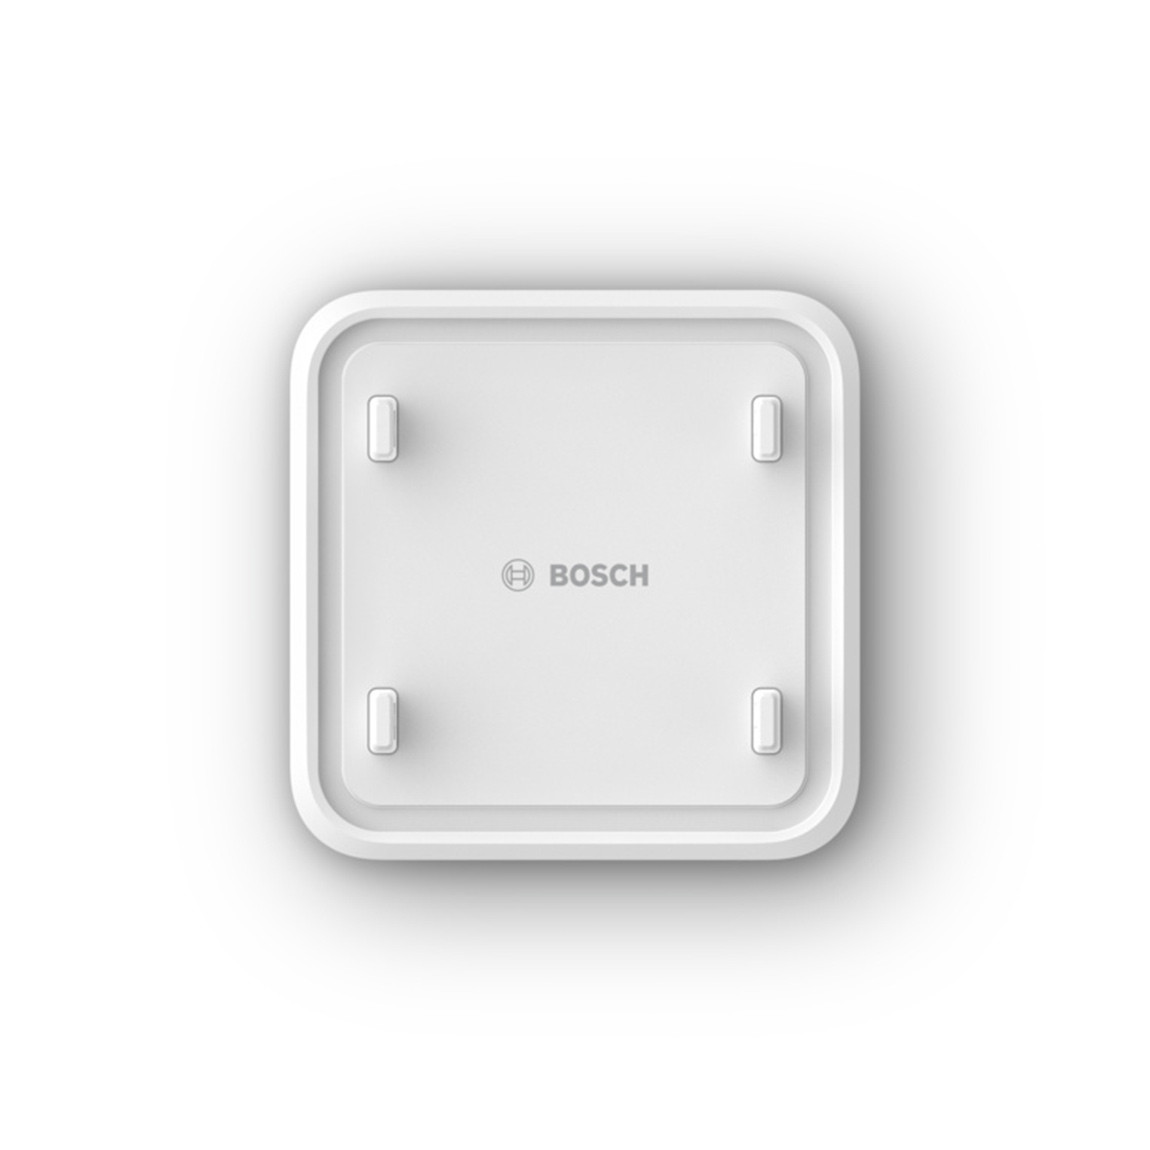 Bosch Smart Home Universalschalter II kaufen